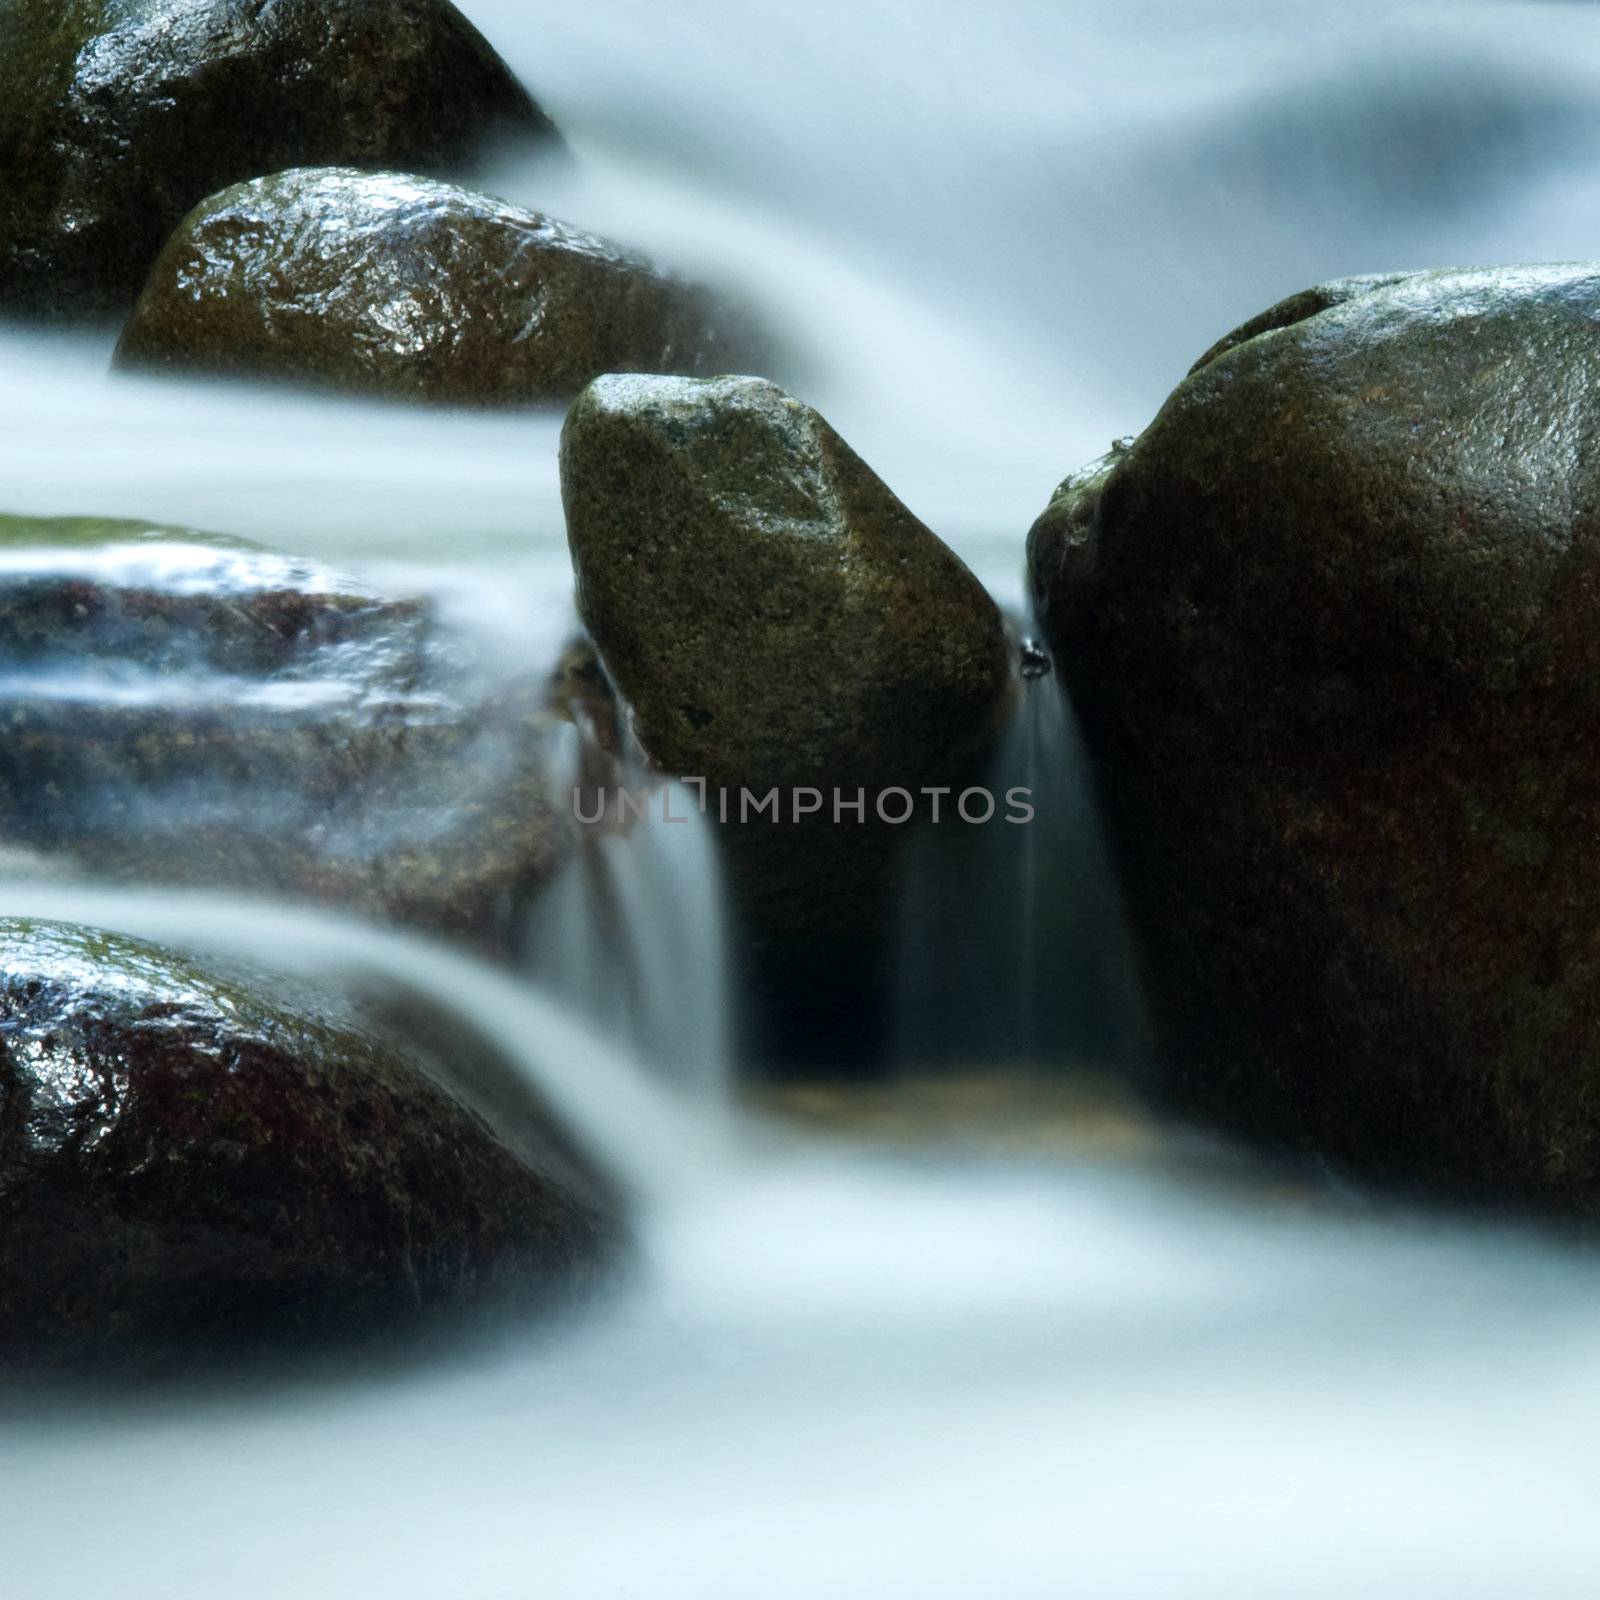 Zen water flowing in 25 seconds long exposure.